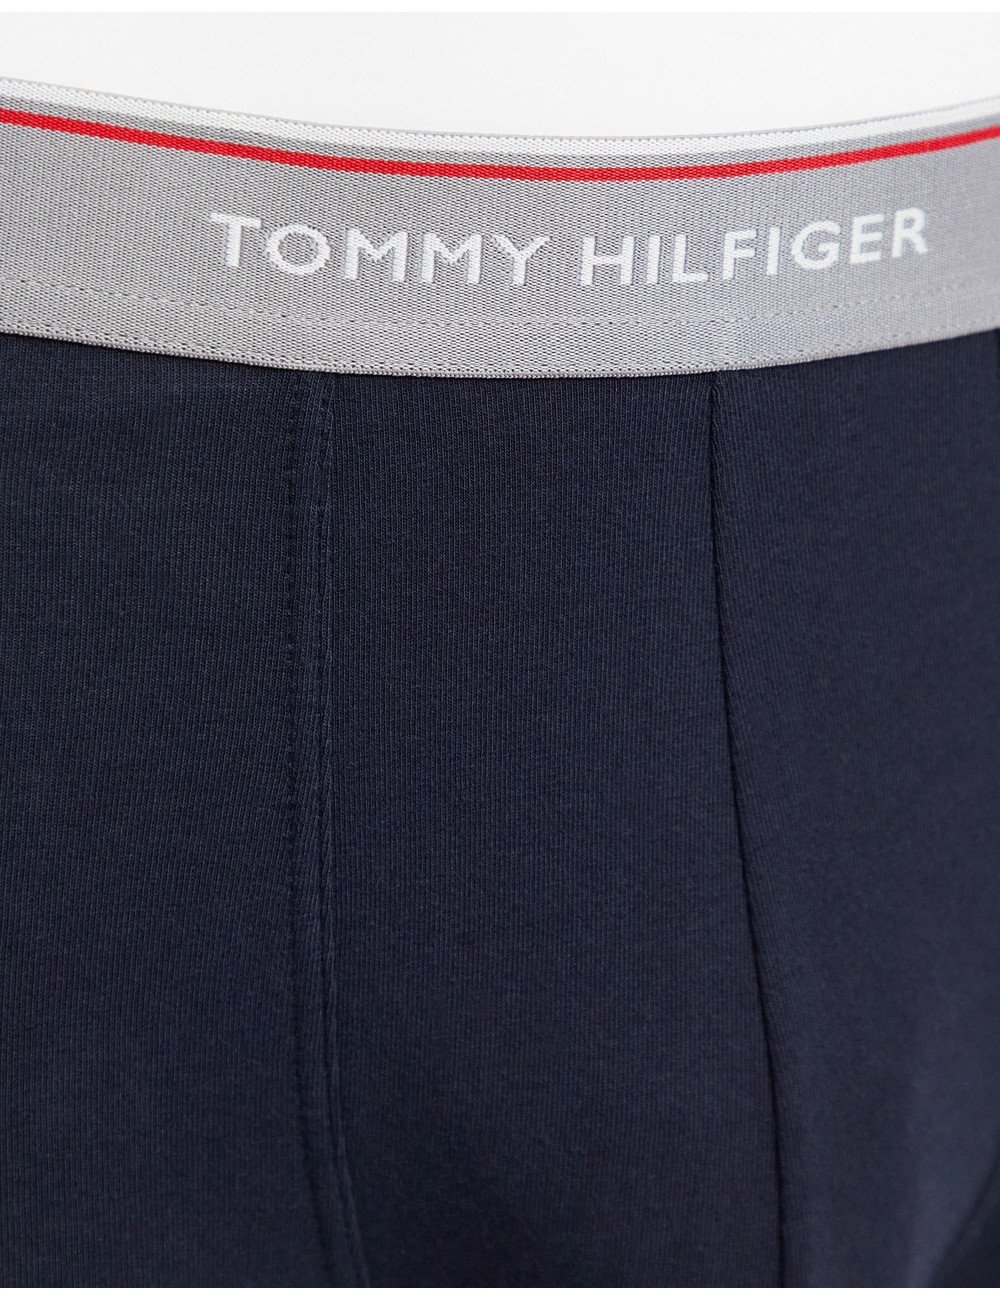 Tommy Hilfiger 3 pack...